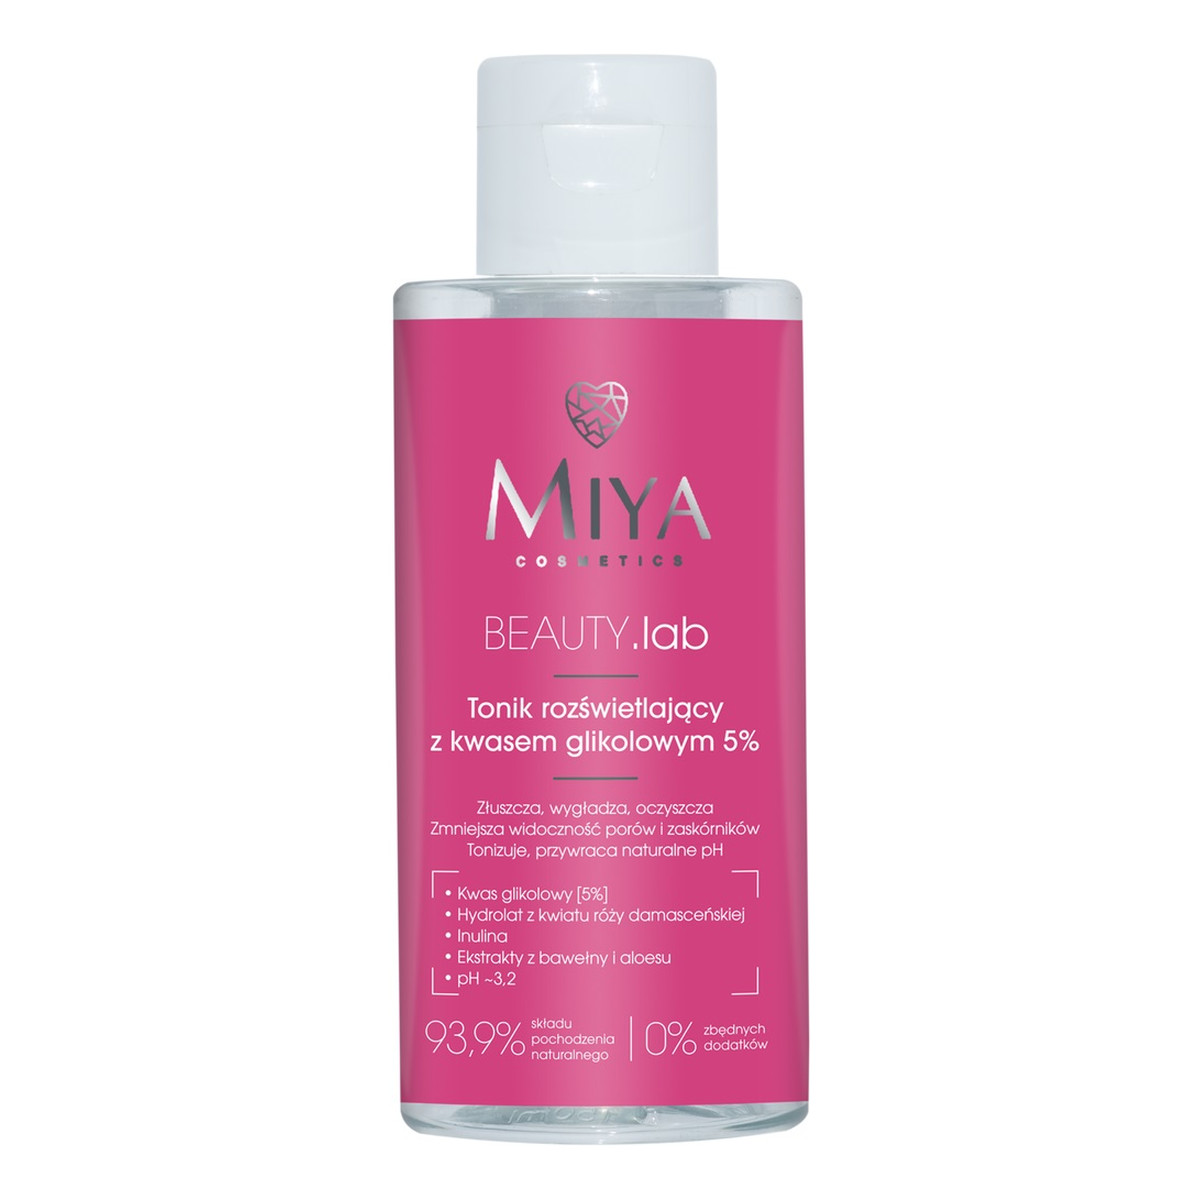 Miya Cosmetics Beauty lab tonik rozświetlający z kwasem glikolowym 5% 150ml